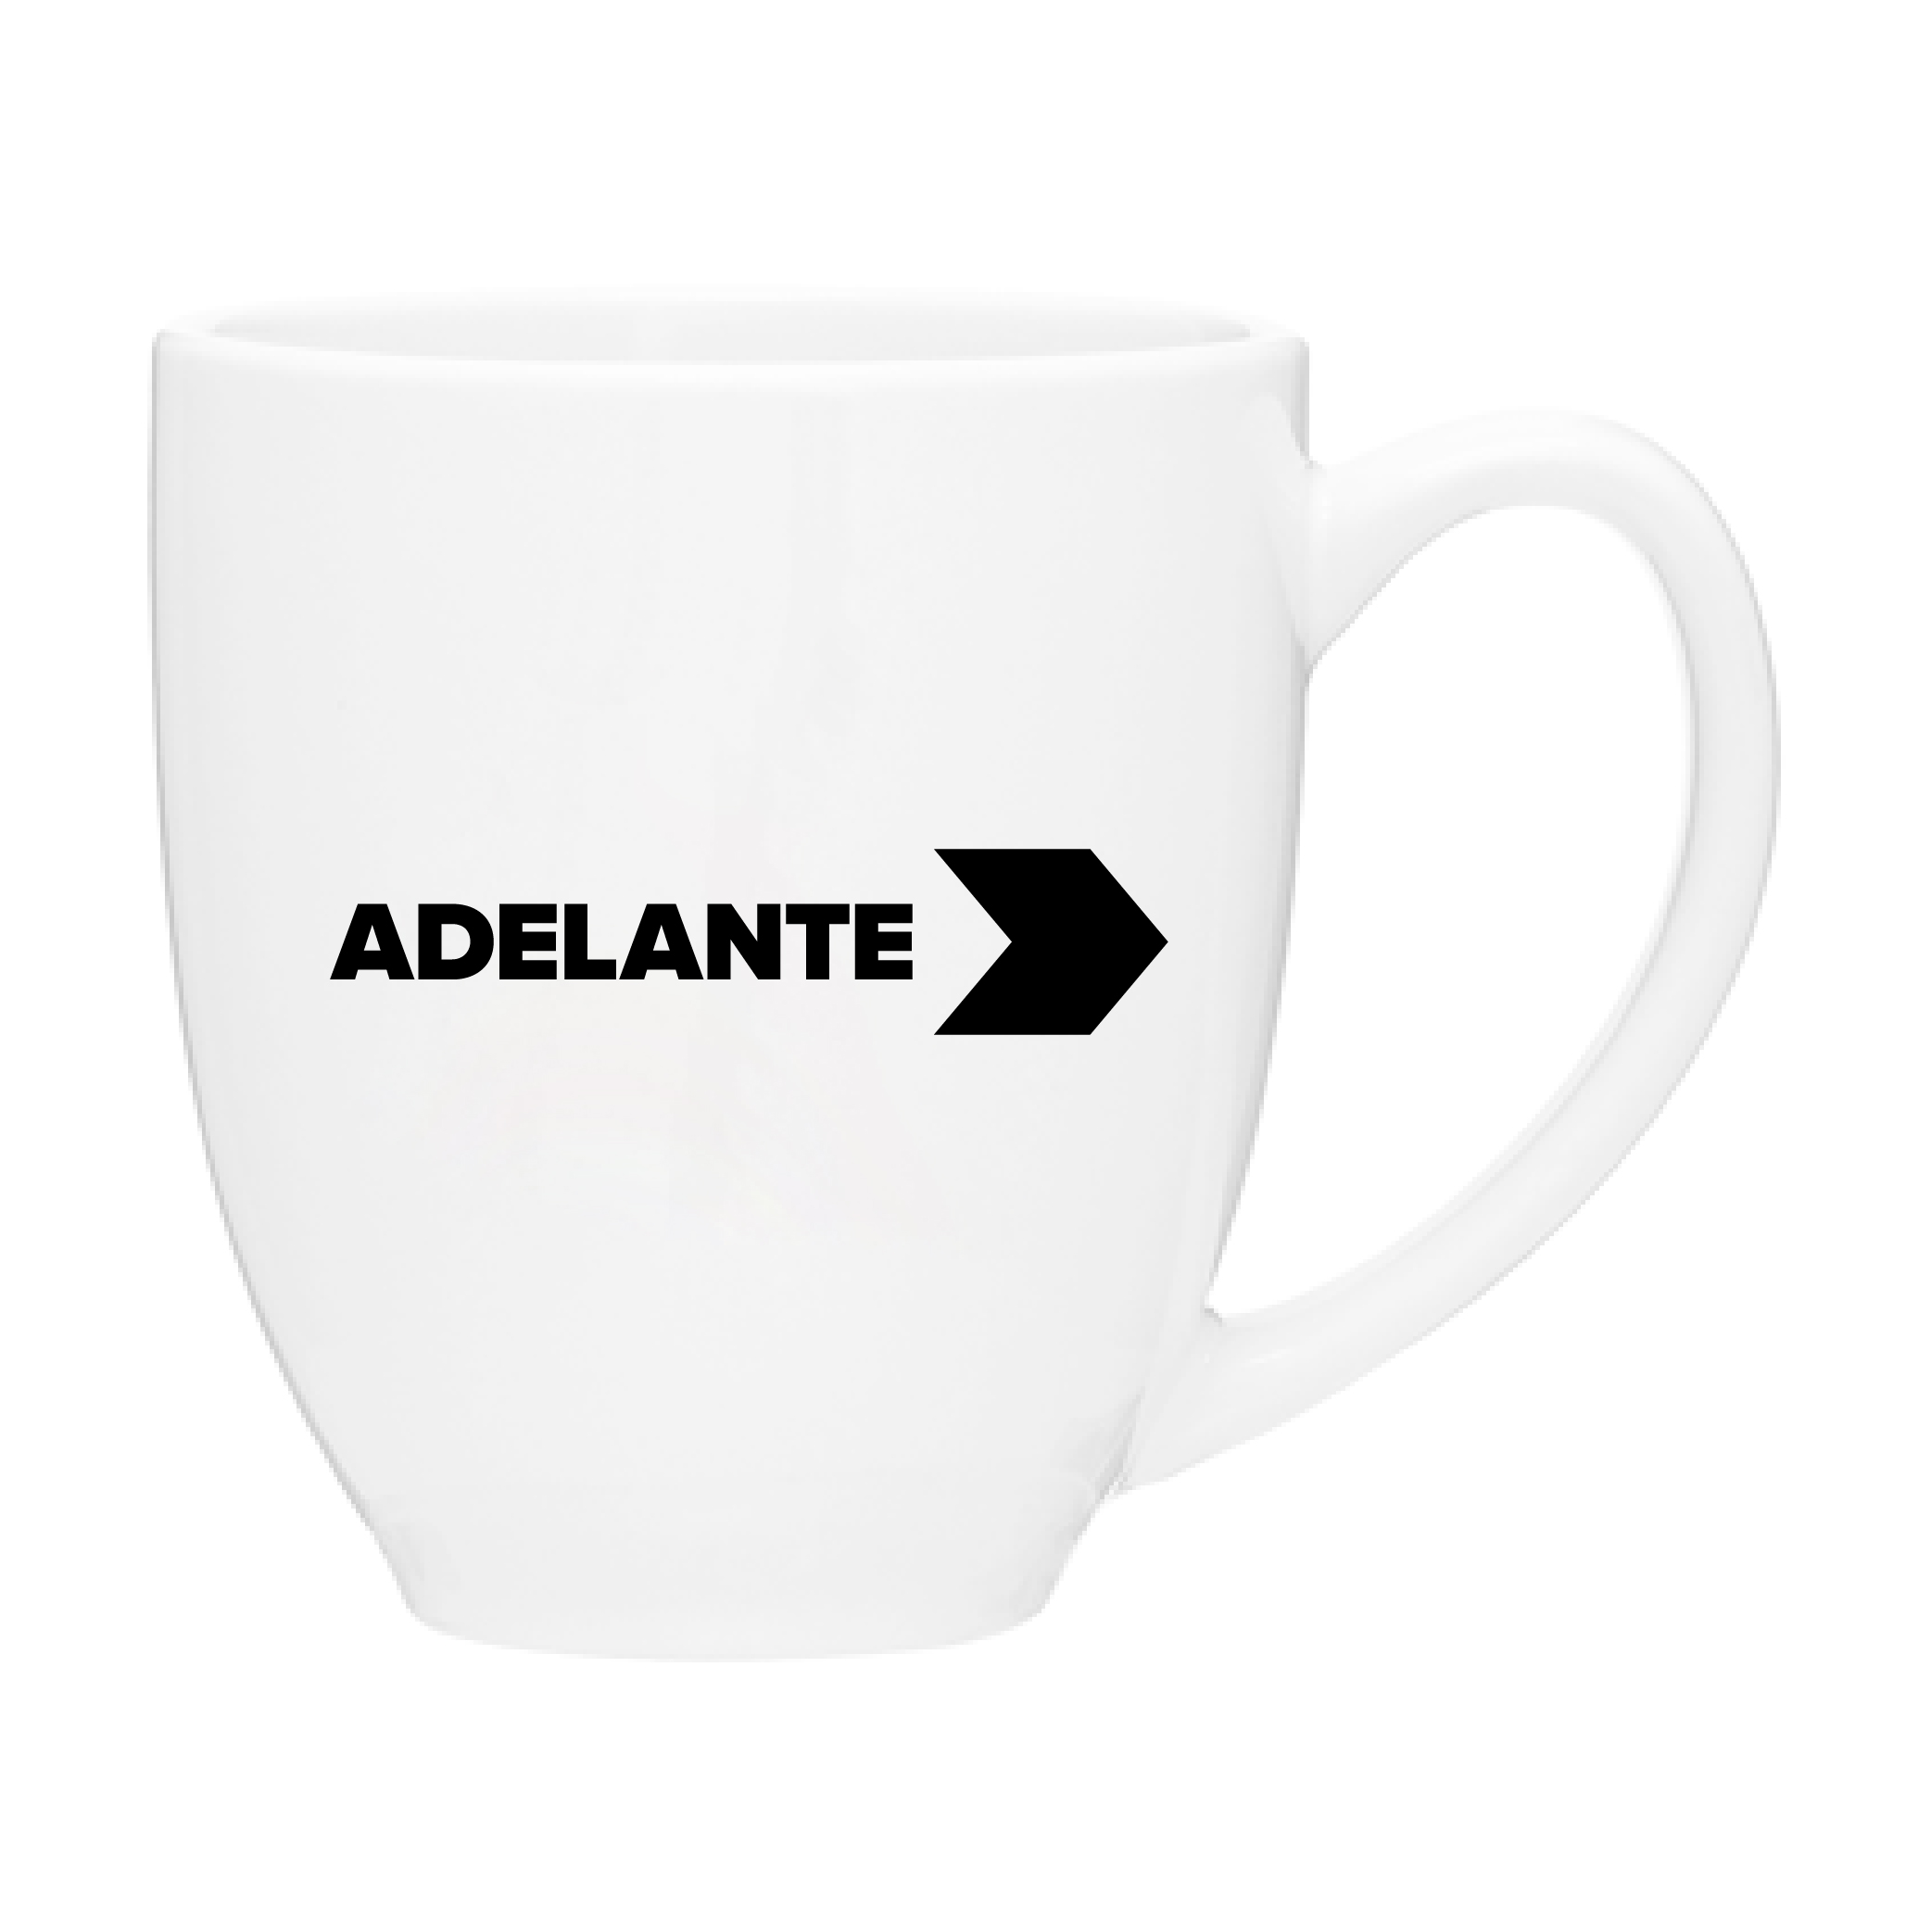 Adelante15 oz. Ceramic Bistro Coffee Mug